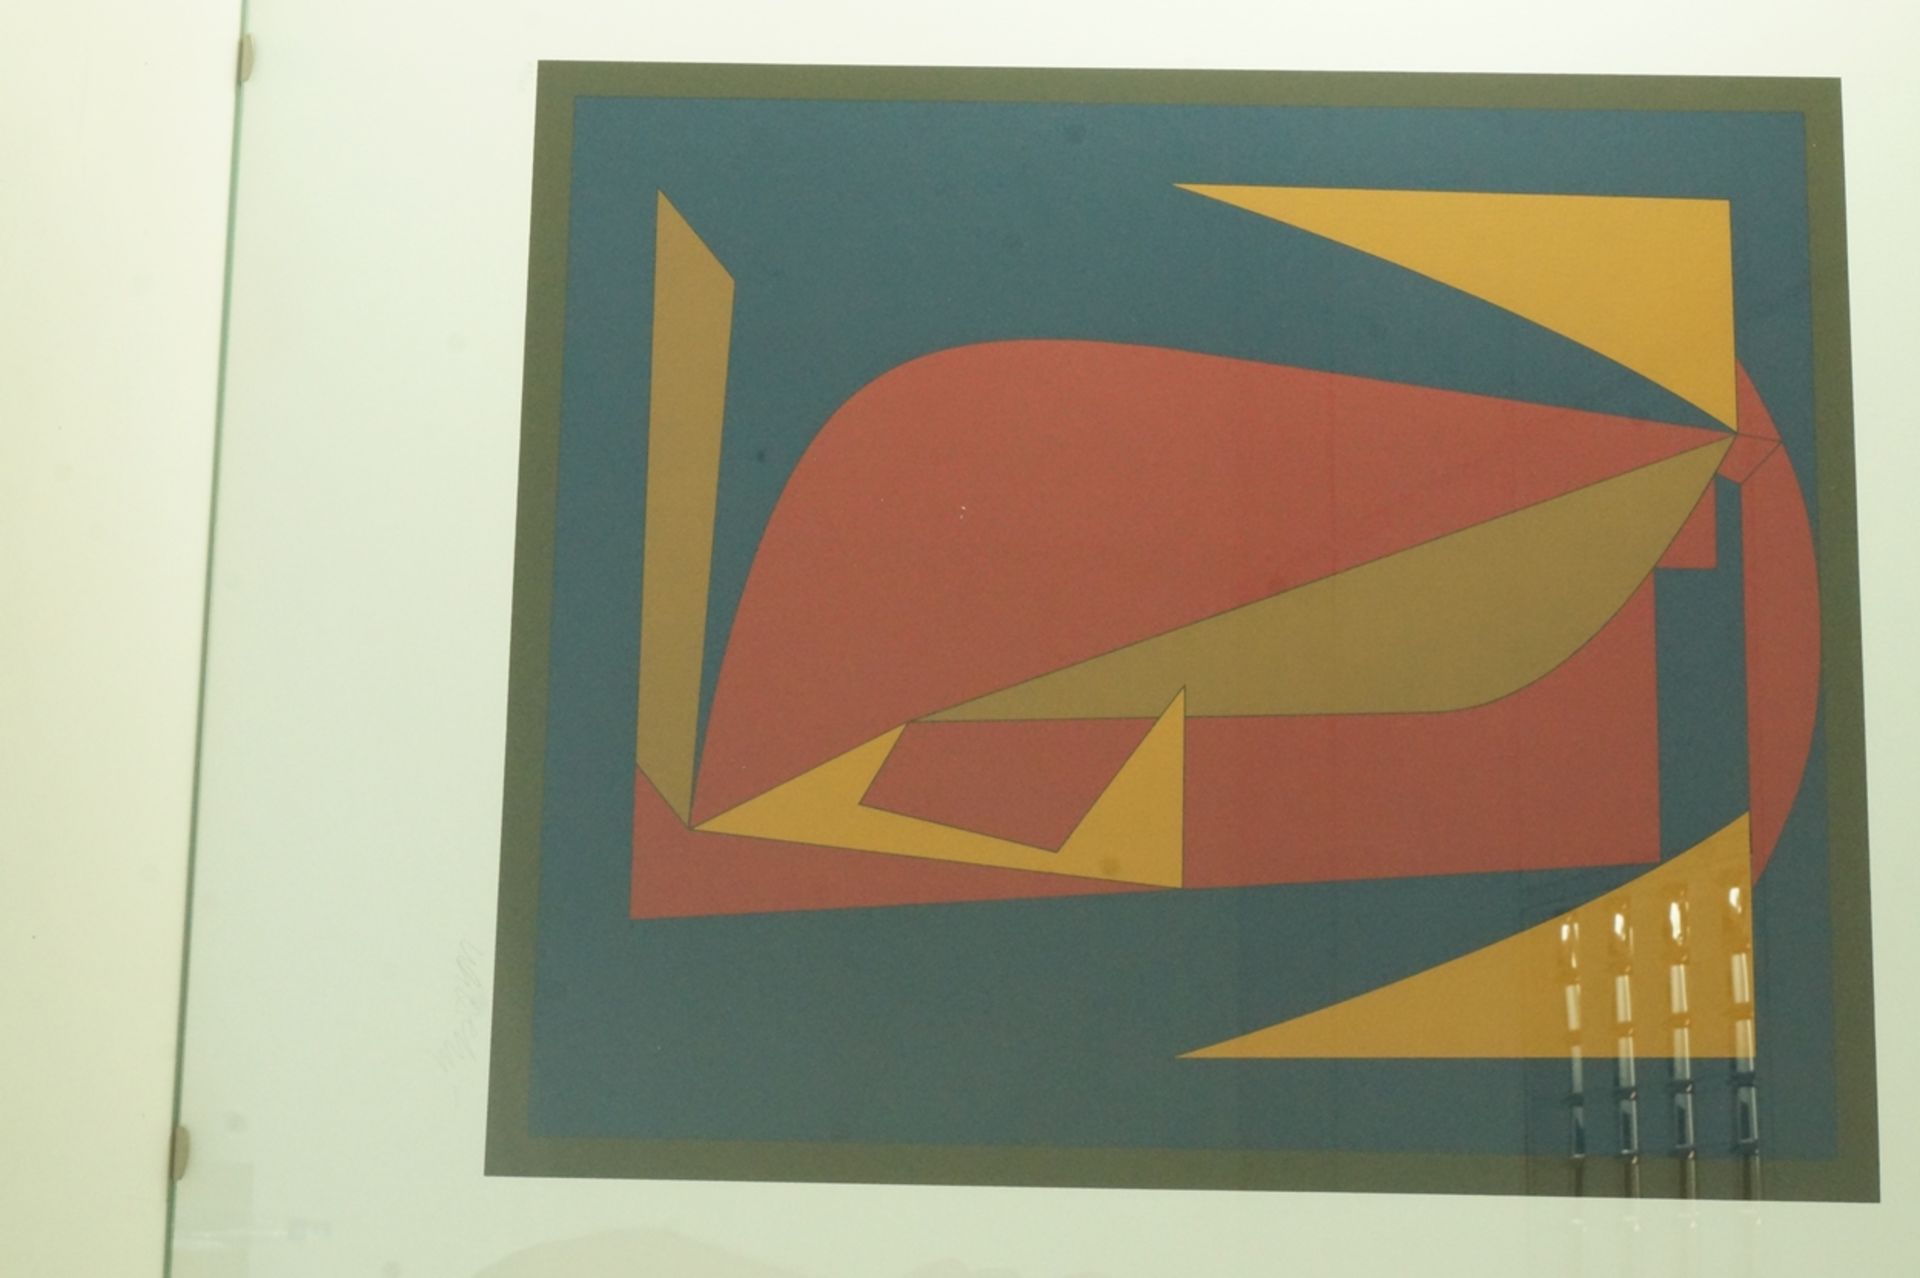 Farbserigraphie von Victor Vasarely (1906-1997); "Zombor", gedruckt 1982, hier u.l. bez. Blatt 43 v - Bild 2 aus 8